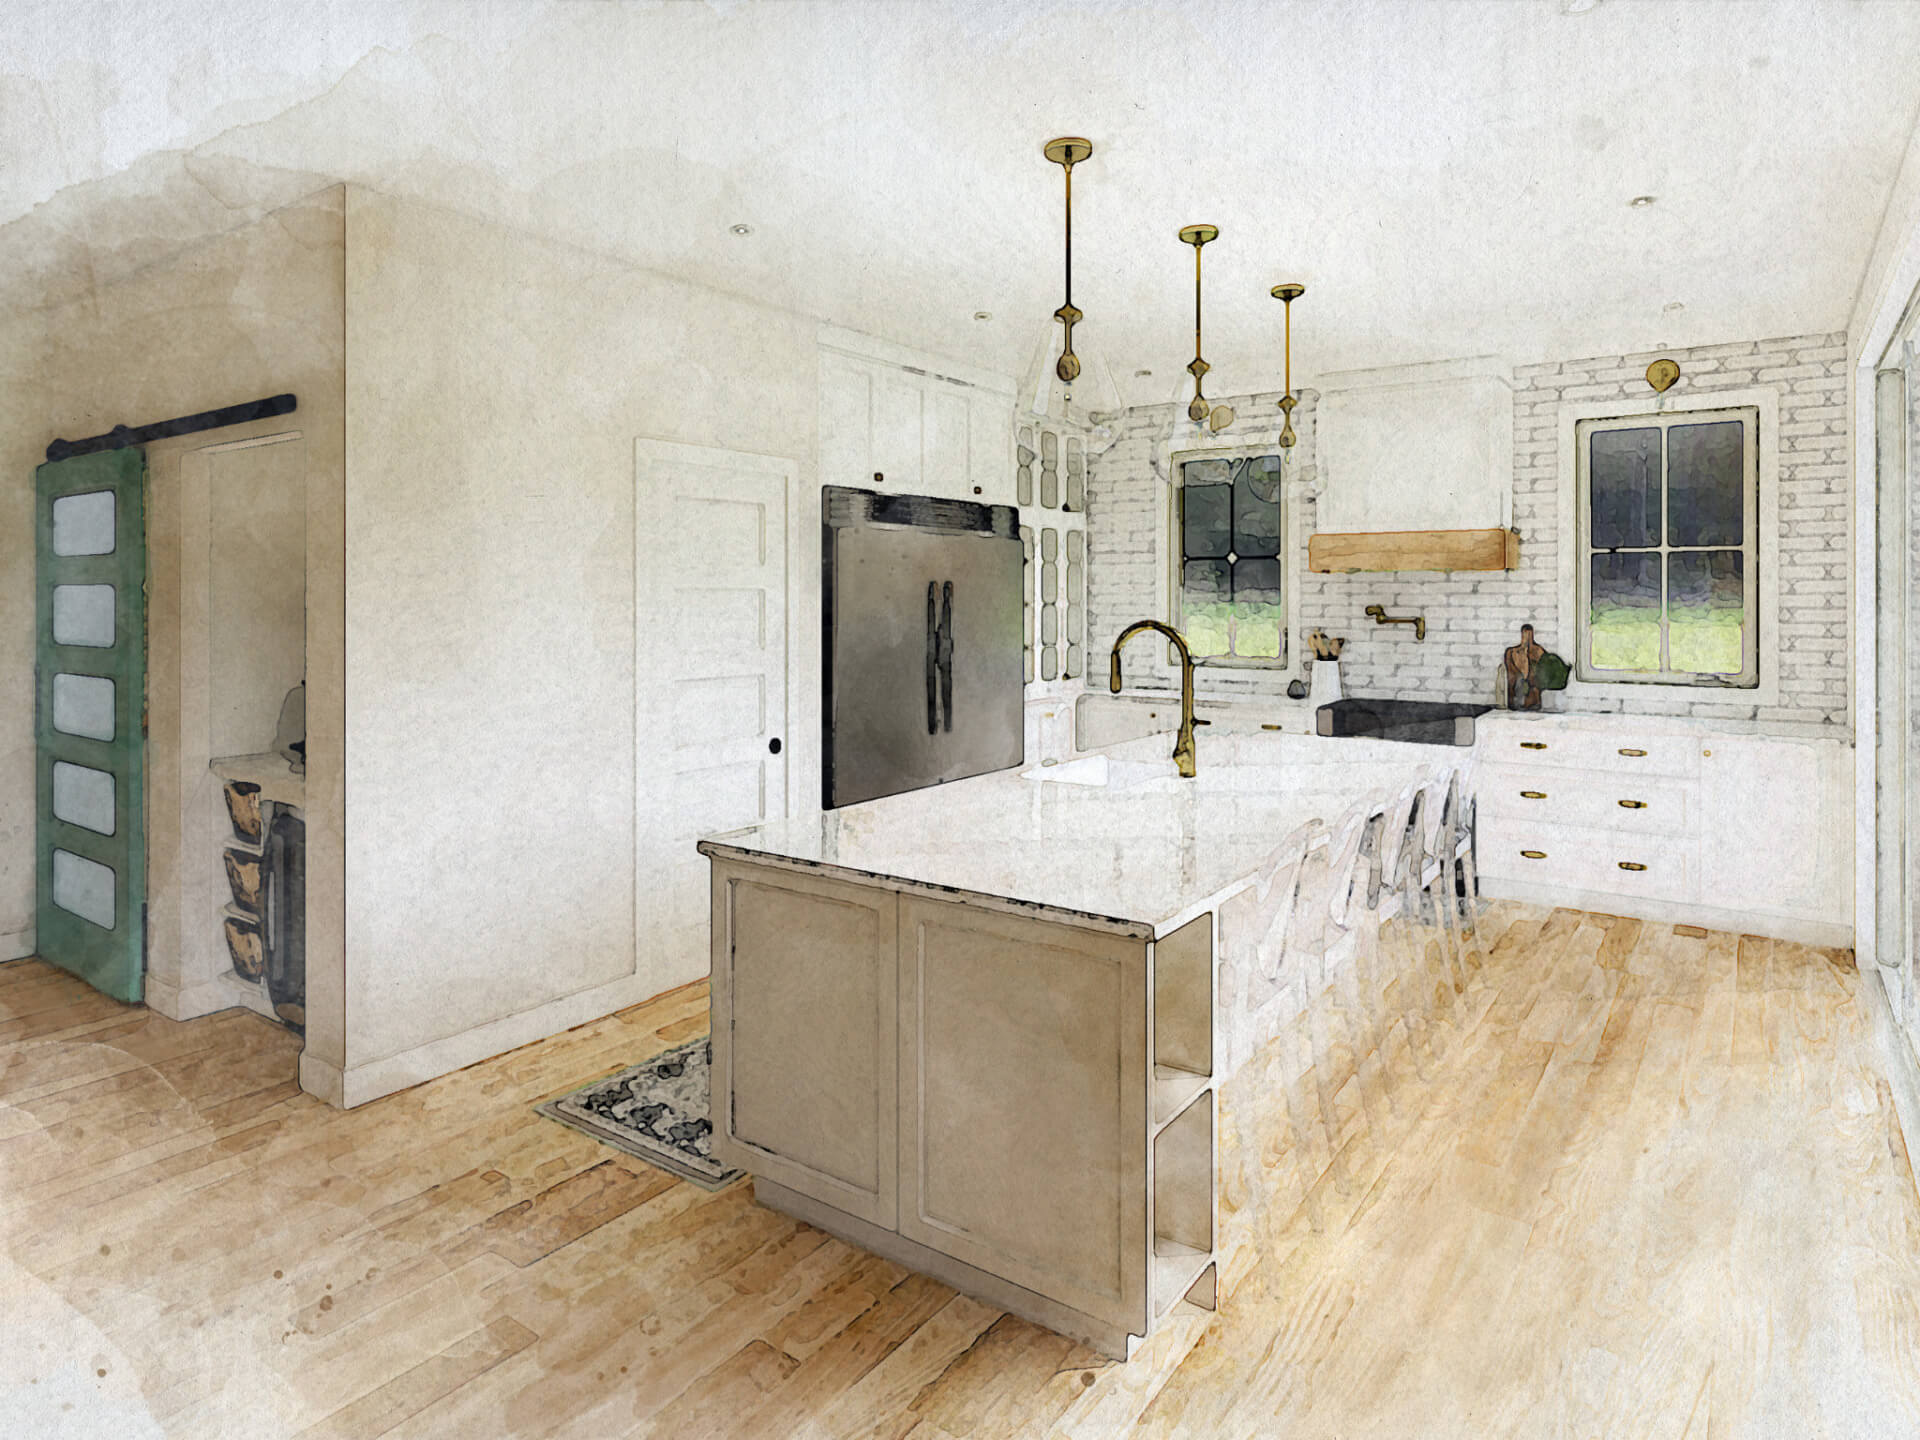 Croquis avec effet aquarelle d'une cuisine, réalisé à partir d'une image 3D.